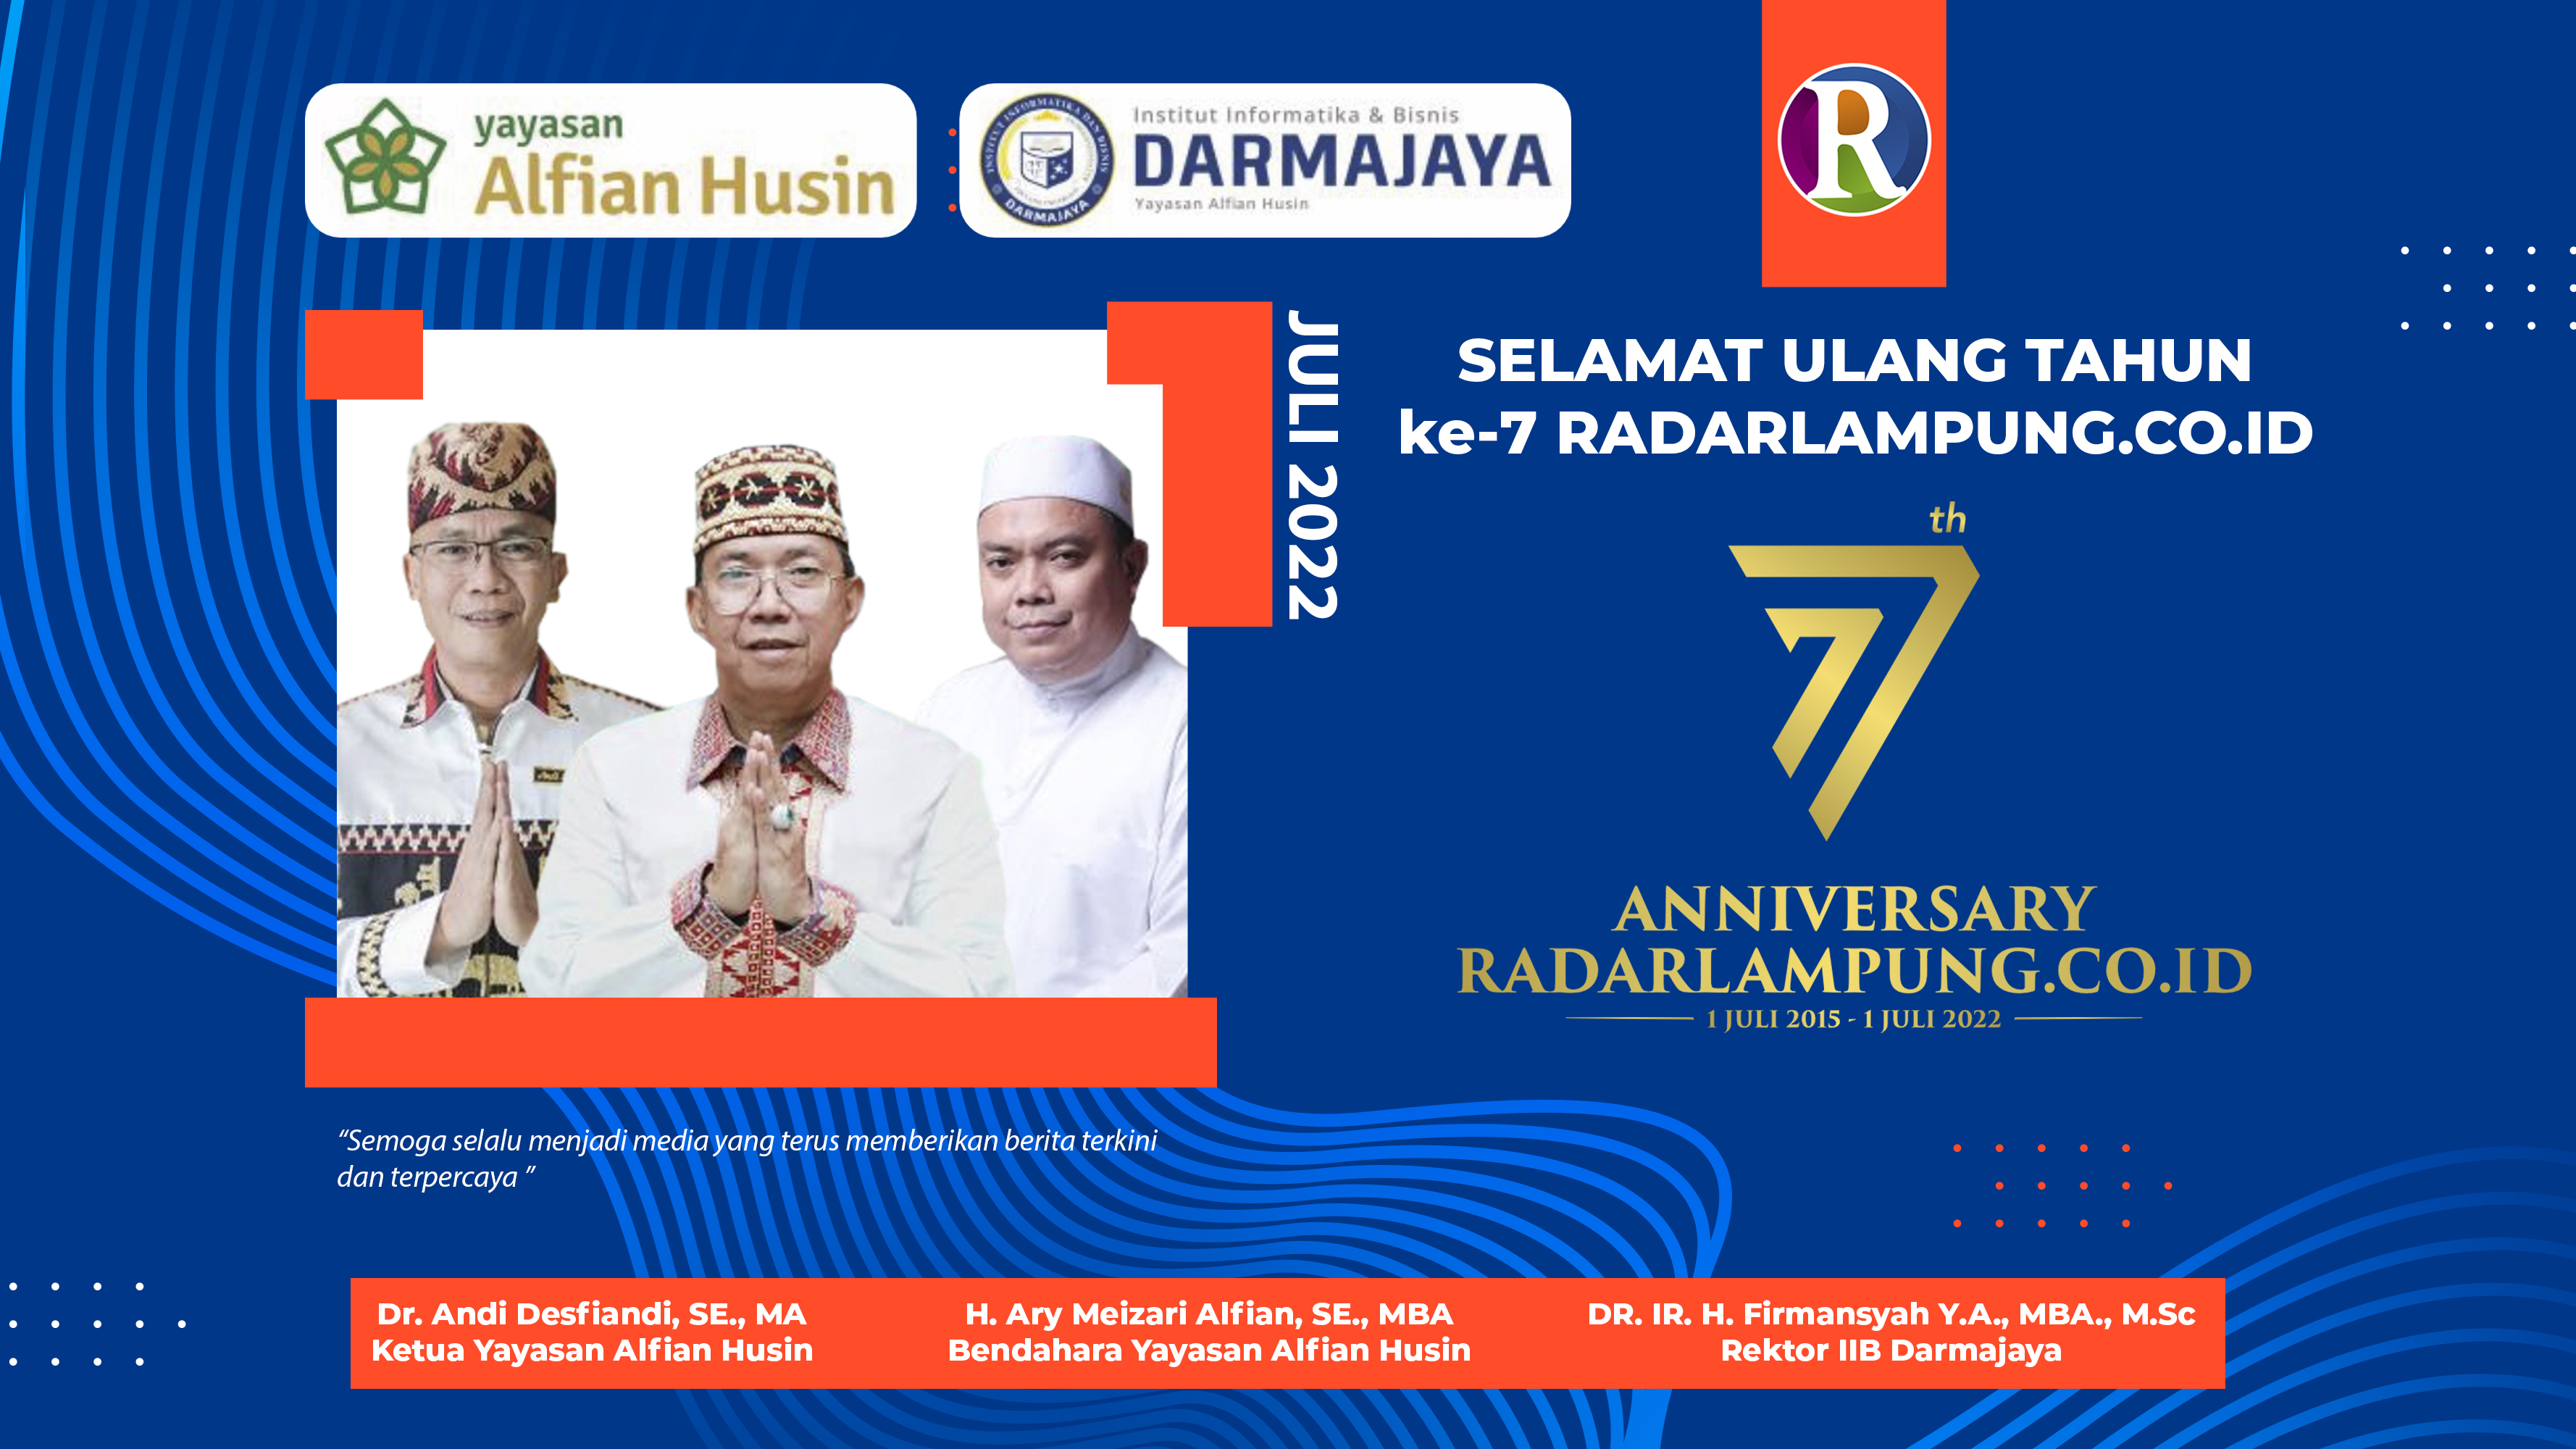 Yayasan Alfian Husin dan IIB Darmajaya: Selamat Ulang Tahun ke-7 Radarlampung.co.id